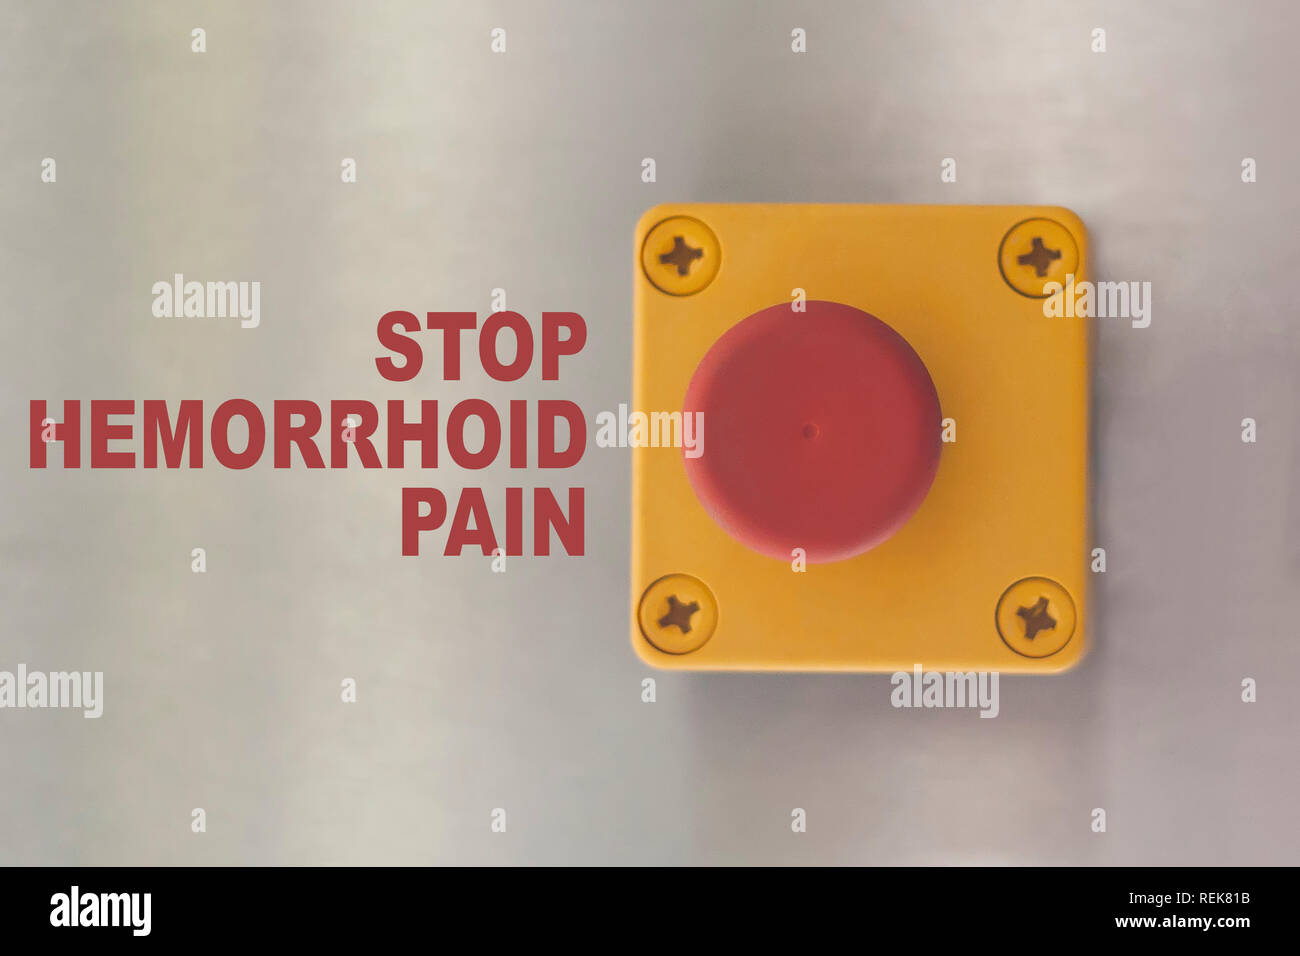 Stop hémorroïdes image conceptuelle. Bouton de commutation industrielle avec texte : arrêter la douleur hémorroïdes Banque D'Images